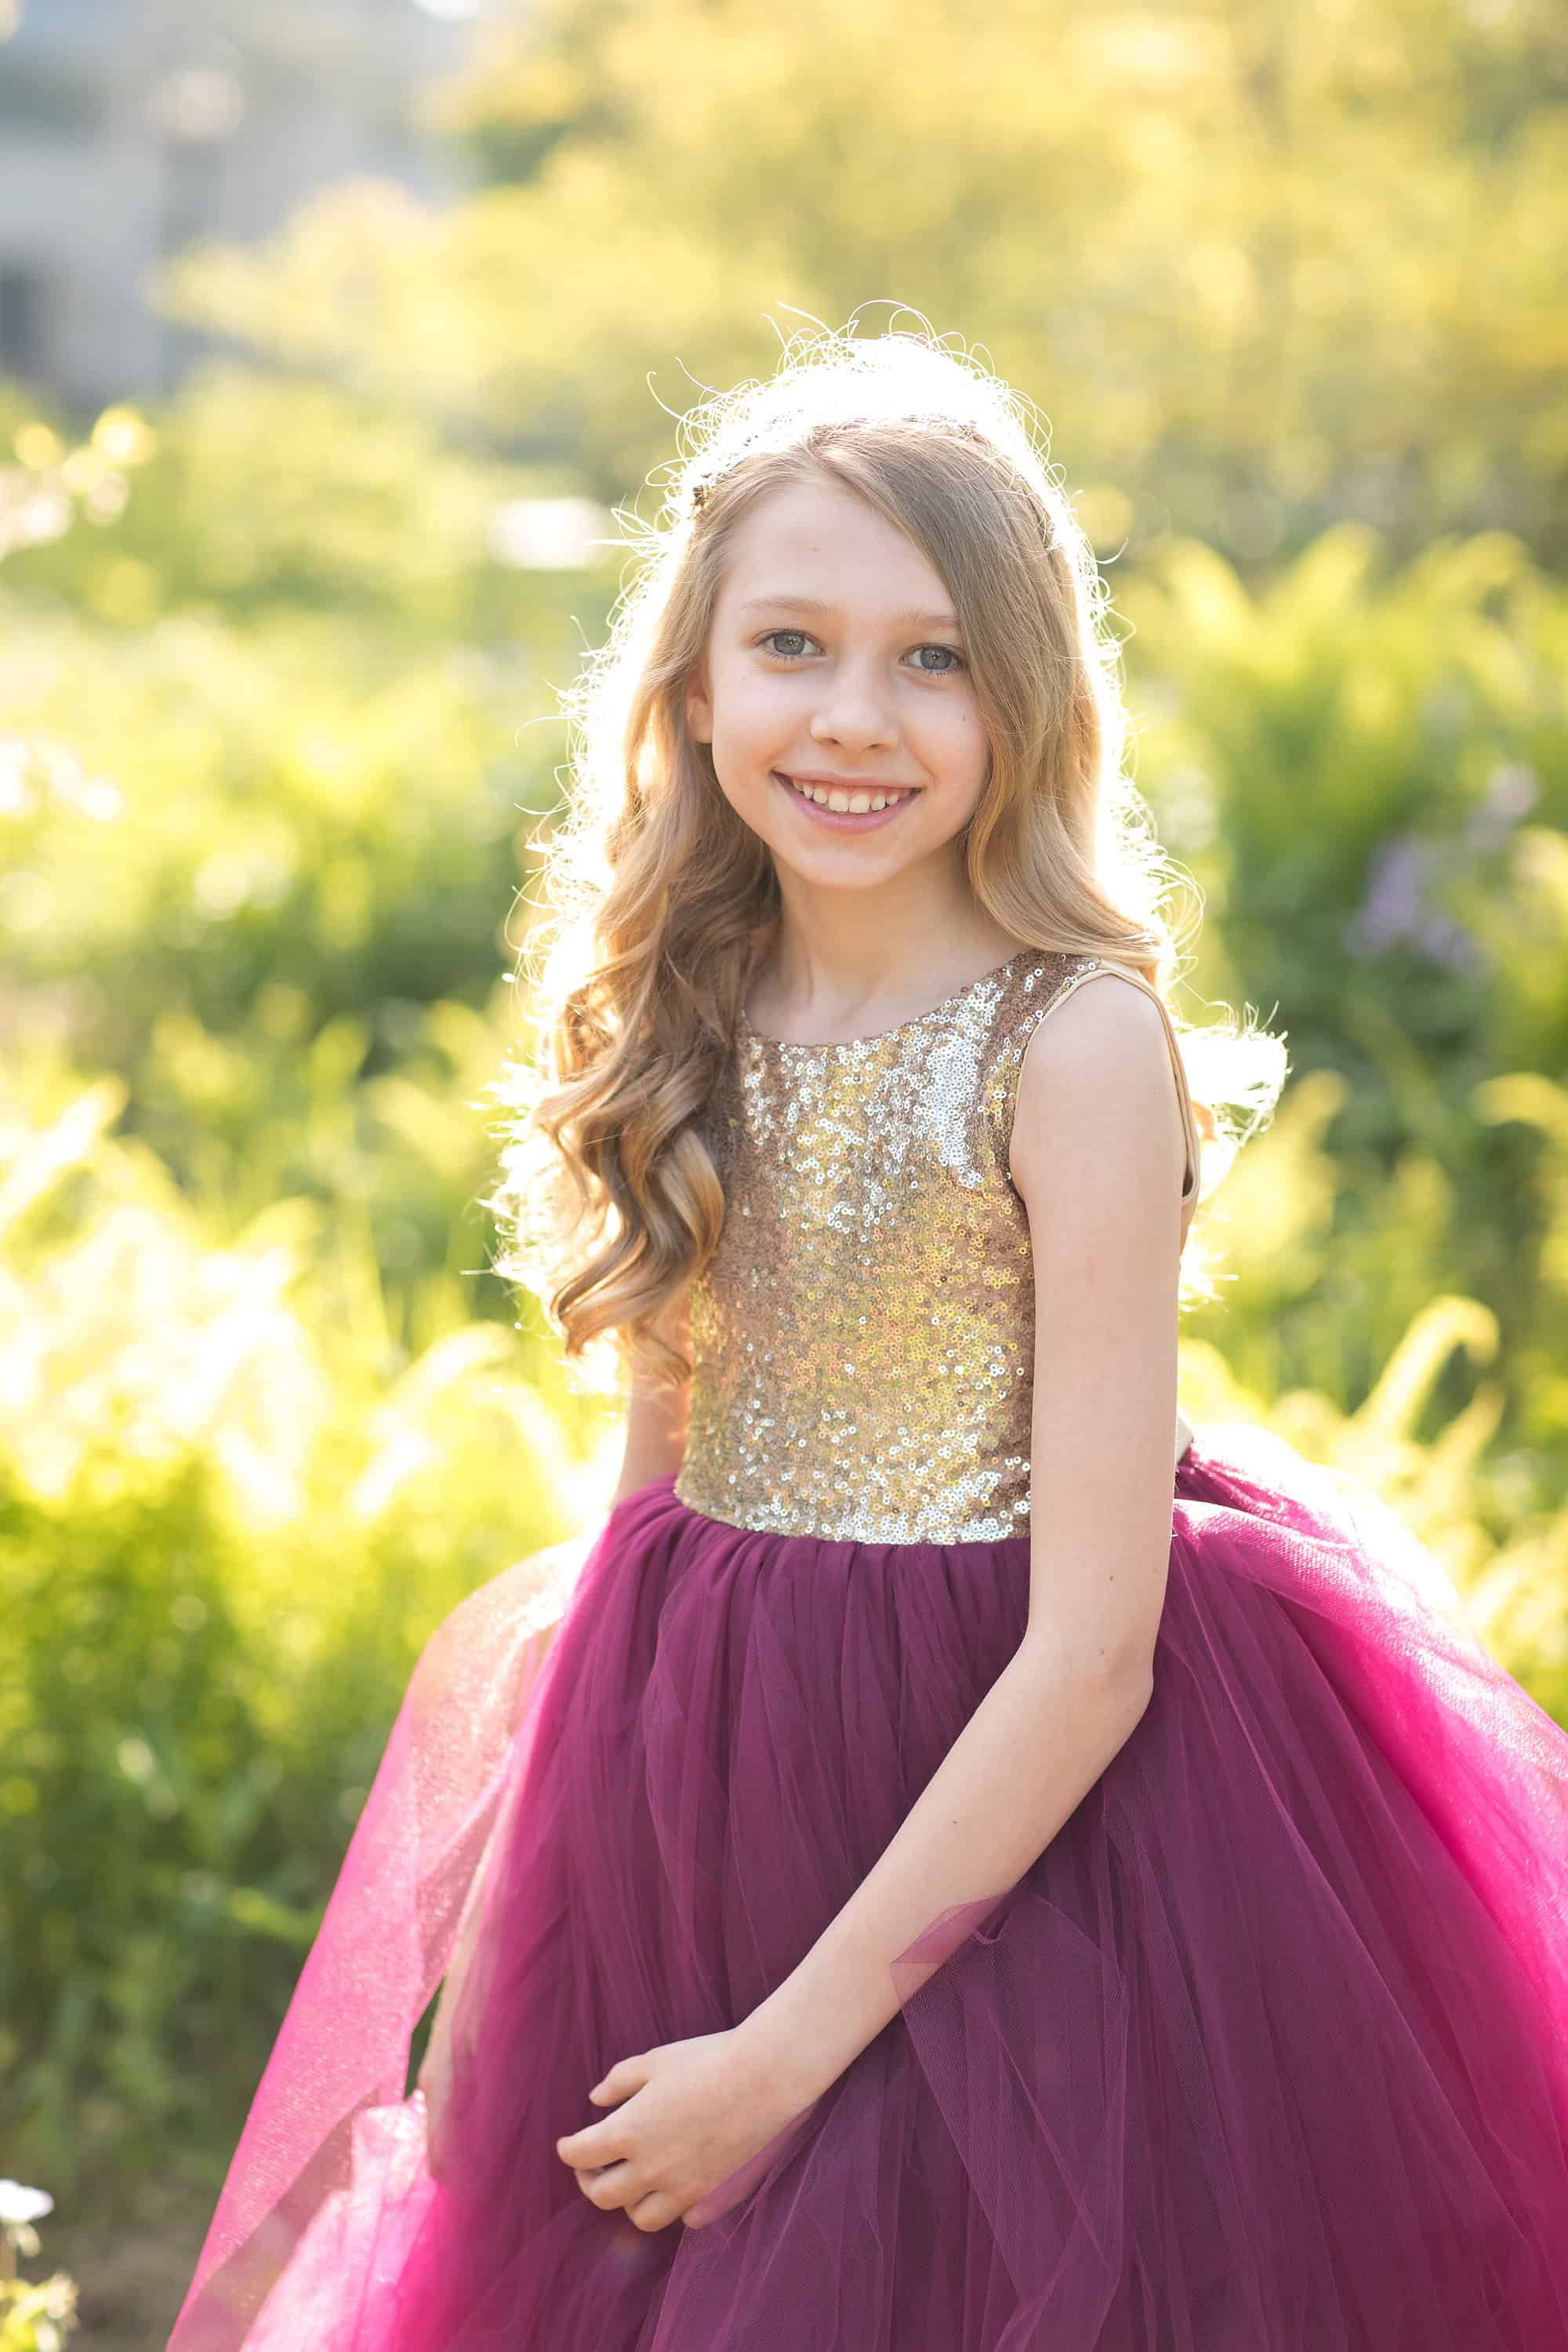 Meet Hannah - Acute Myeloid Leukemia - The Gold Hope Project